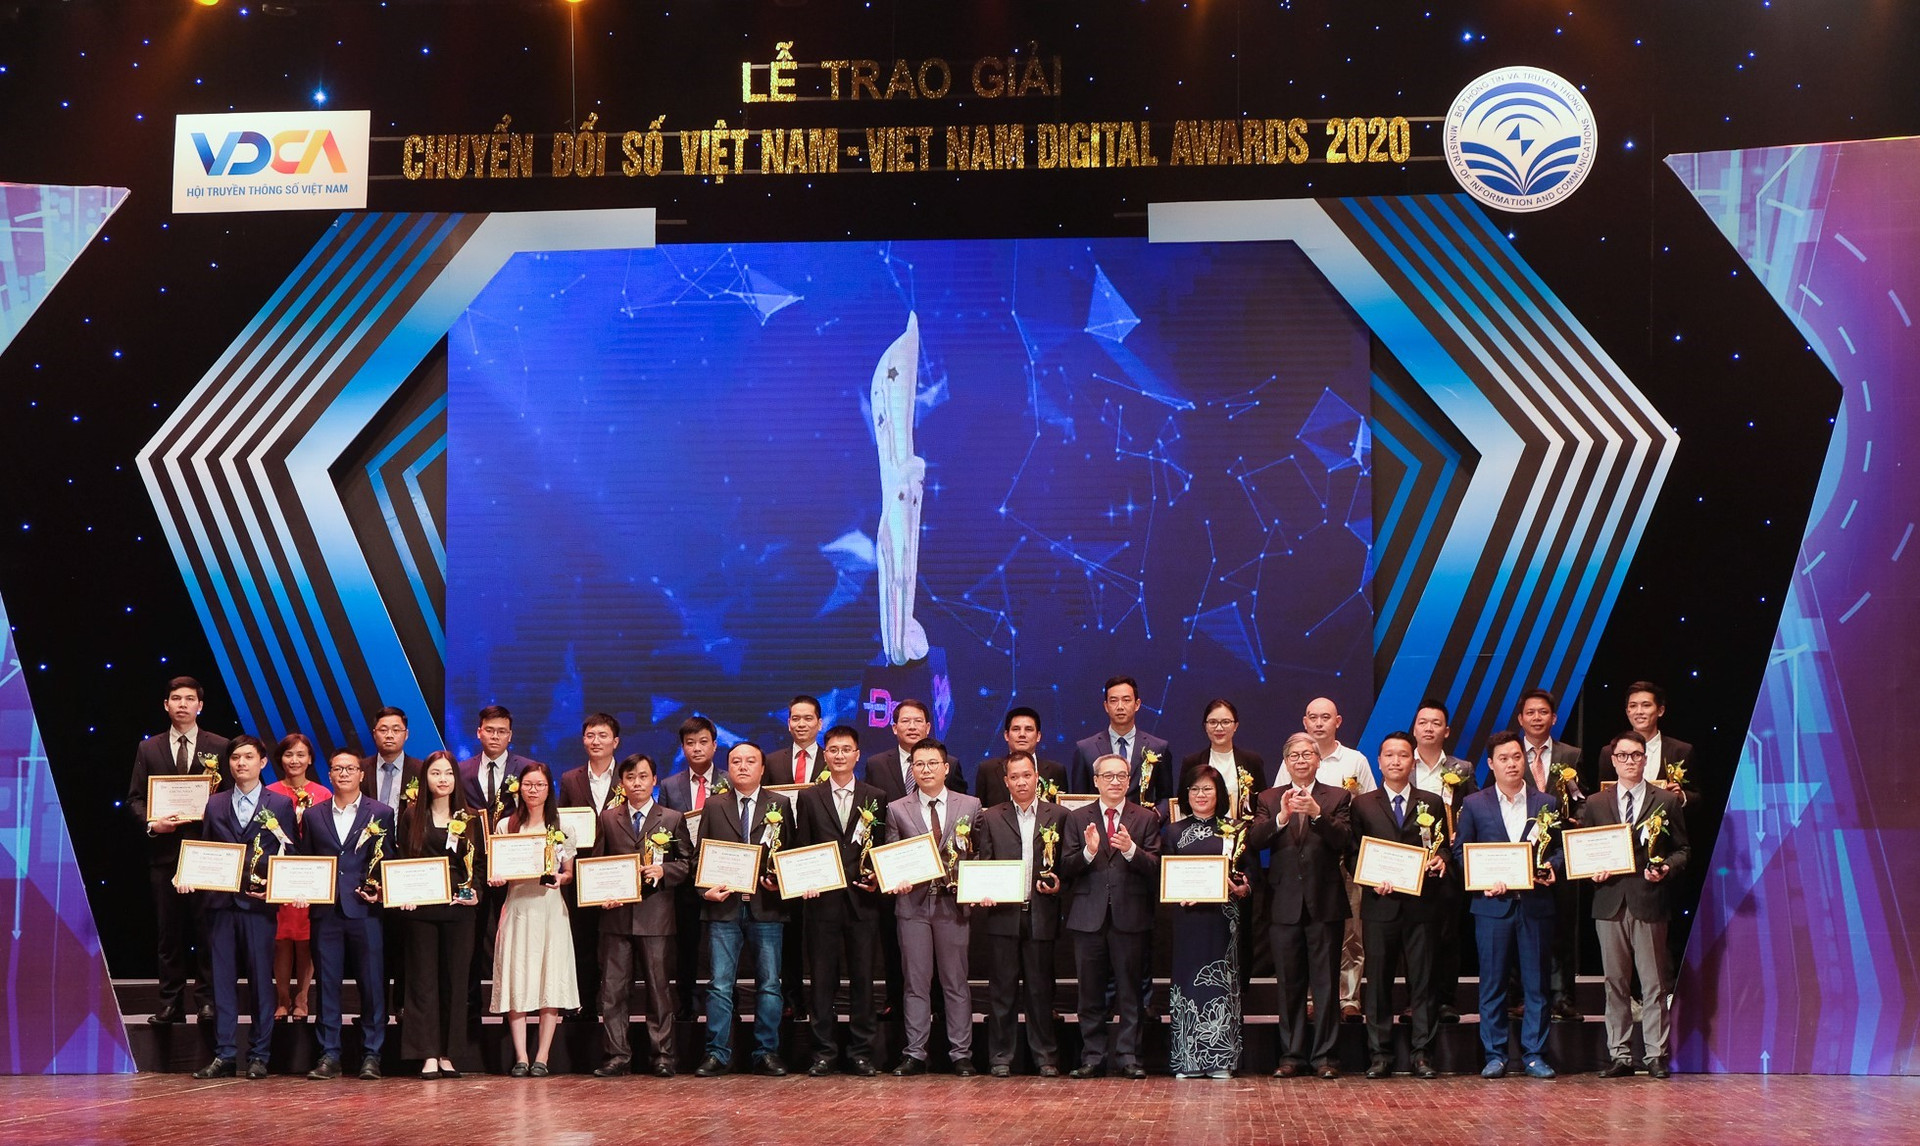 FPT IS lập “hat-trick” với 3 sản phẩm đạt Giải thưởng Chuyển đổi số Việt Nam năm 2020 - Ảnh 1.